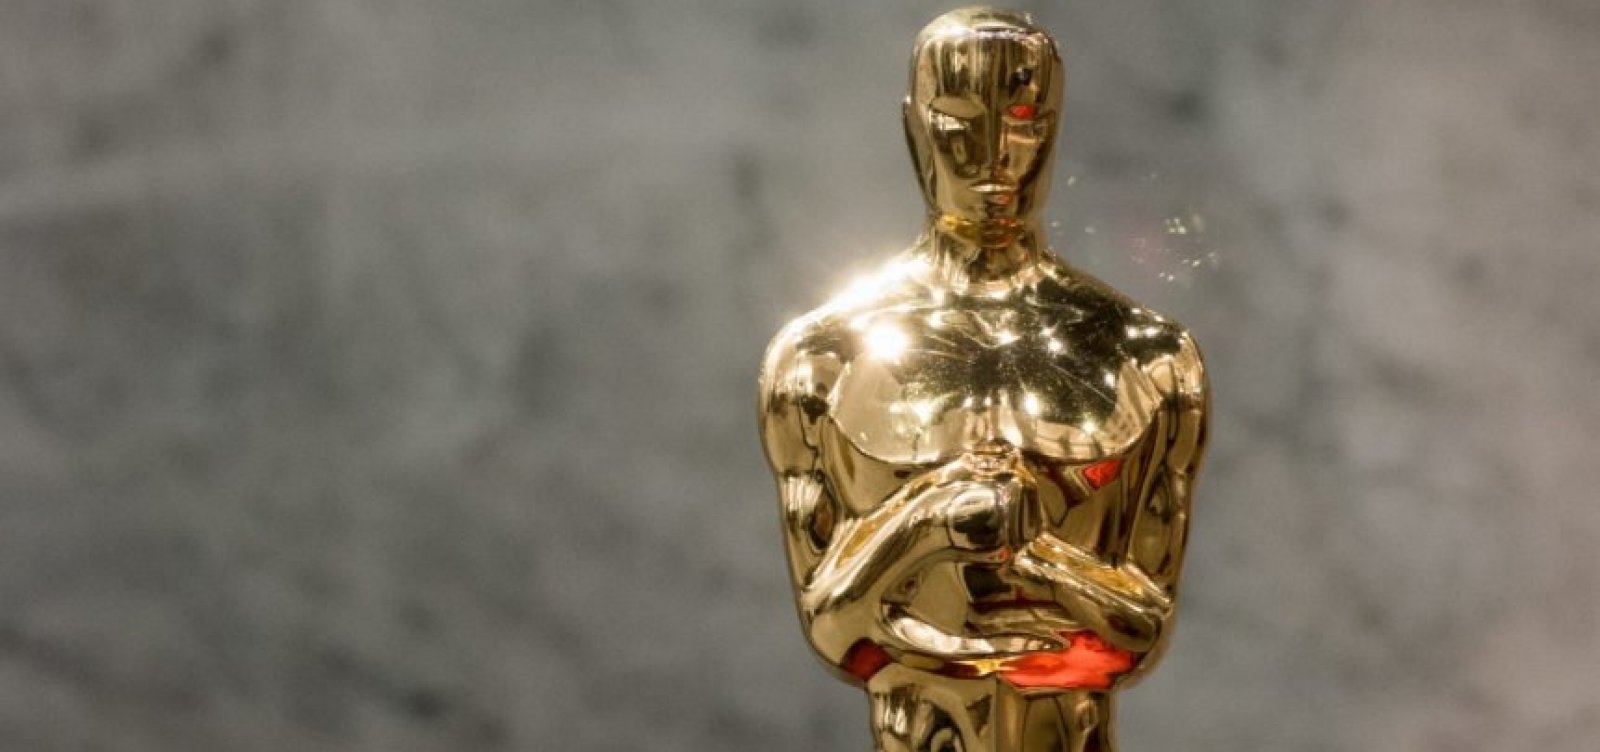 Oscar 2019: filmes indicados ao prêmio são revelados hoje